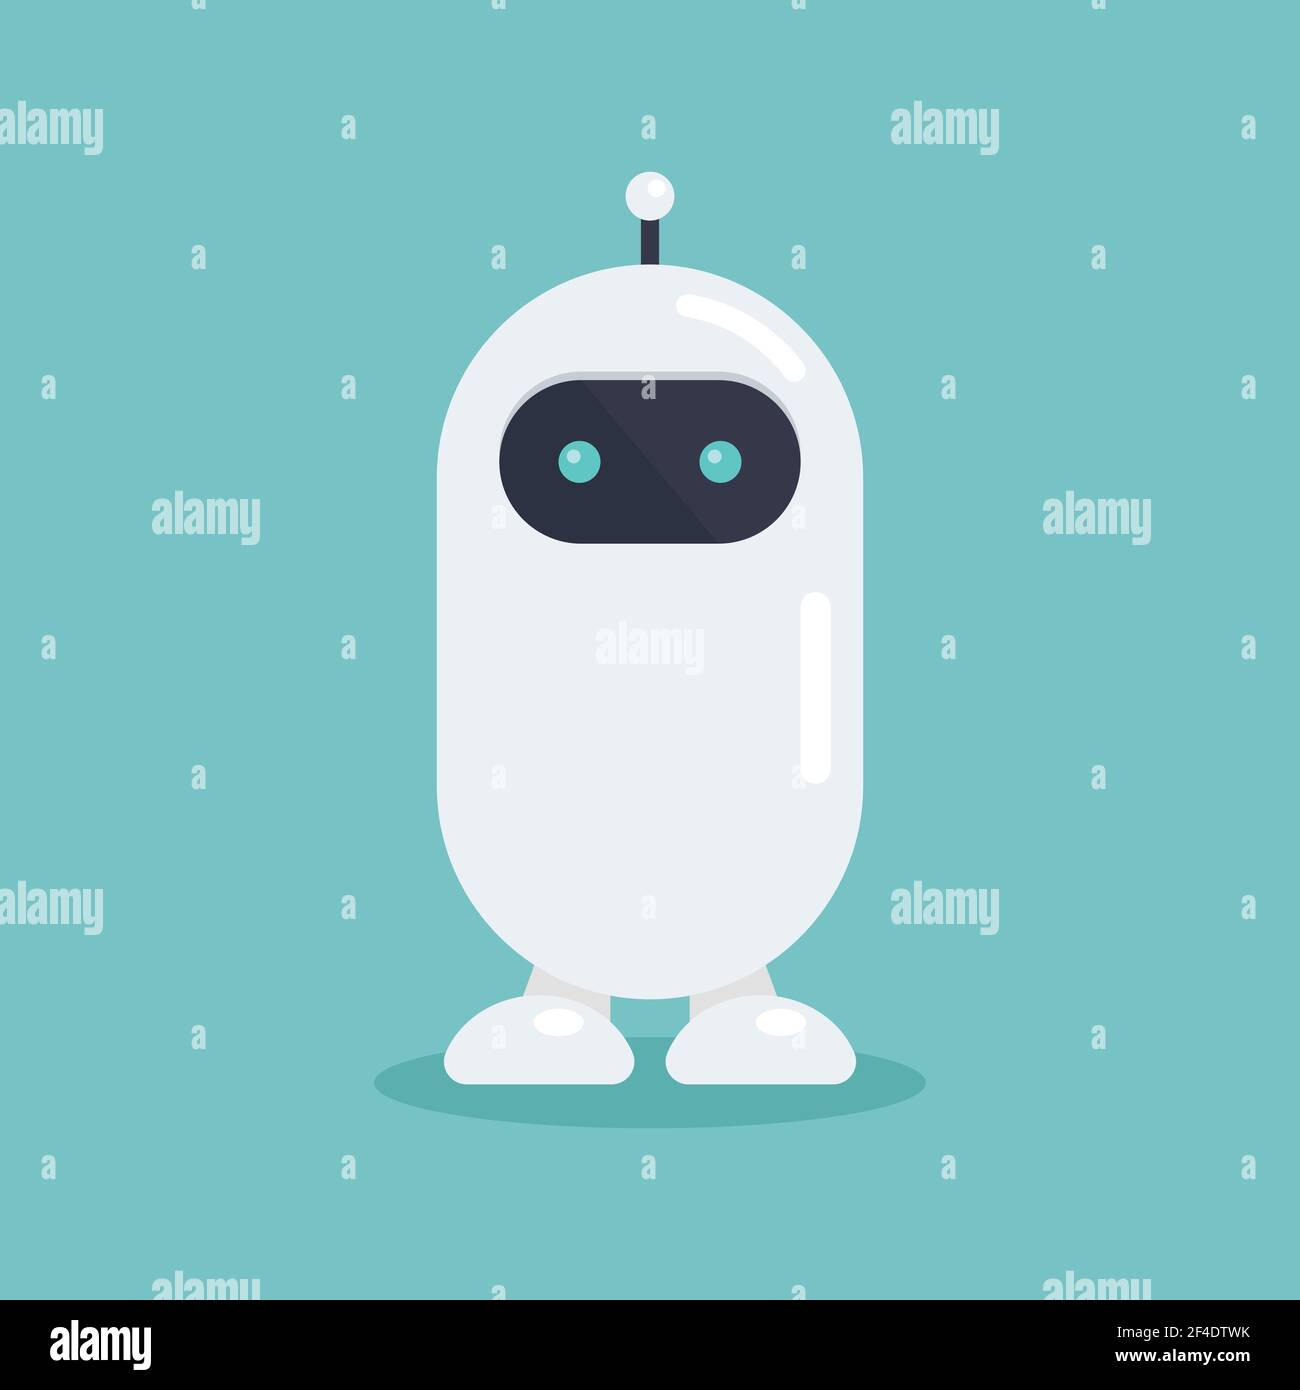 efter det indbildskhed Reklame Cute robot in flat style. Vector illustration. Graphic design Stock Vector  Image & Art - Alamy